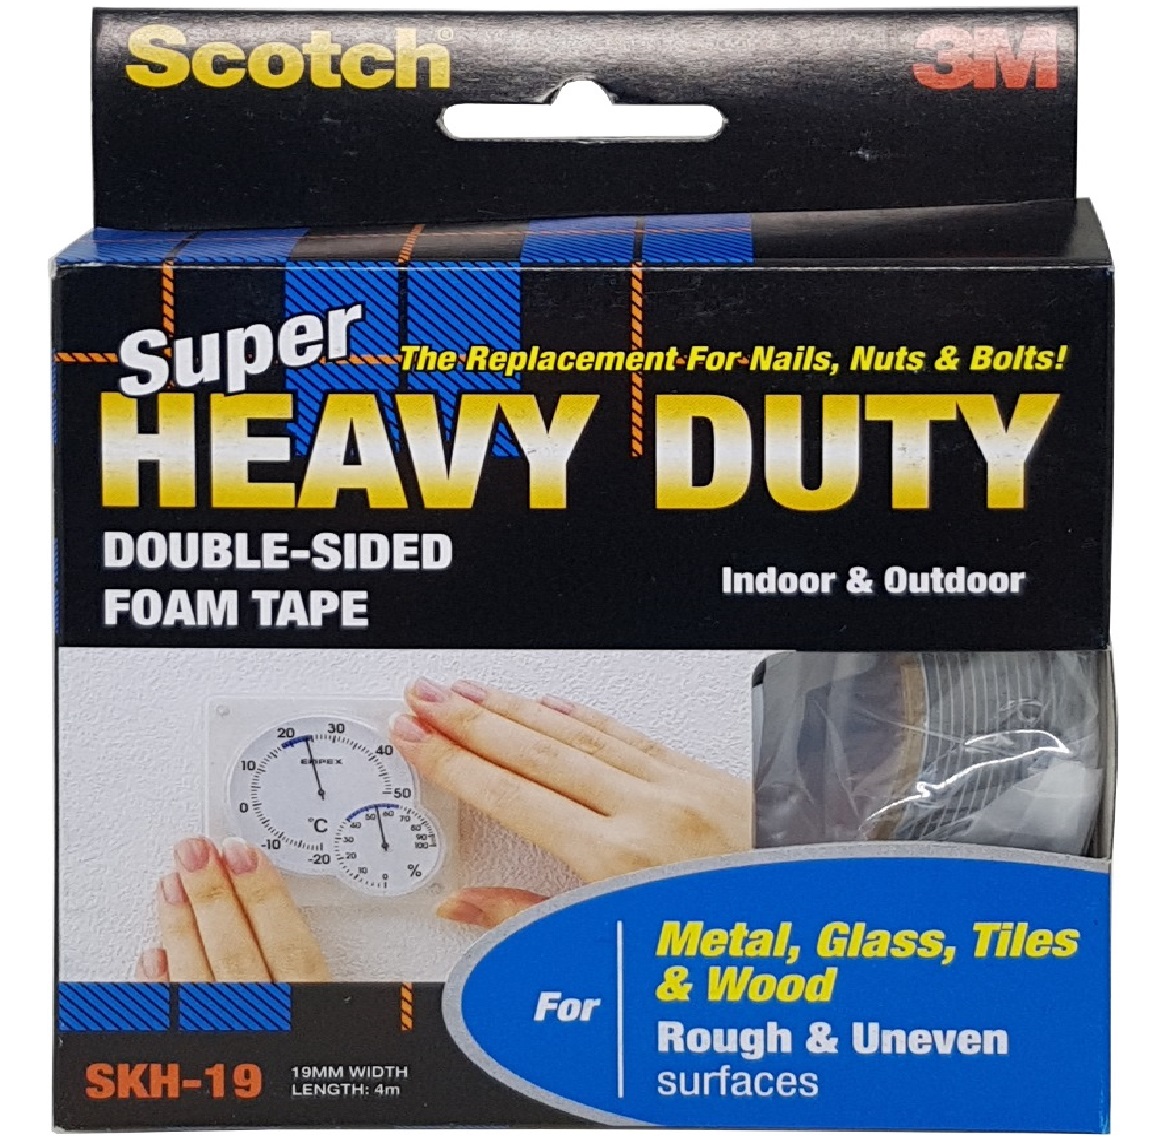 3M Scotch Super Heavy Duty Tape For Rough & Uneven Surfaces - Metal Glass Tiles Wood 19MM X 4M